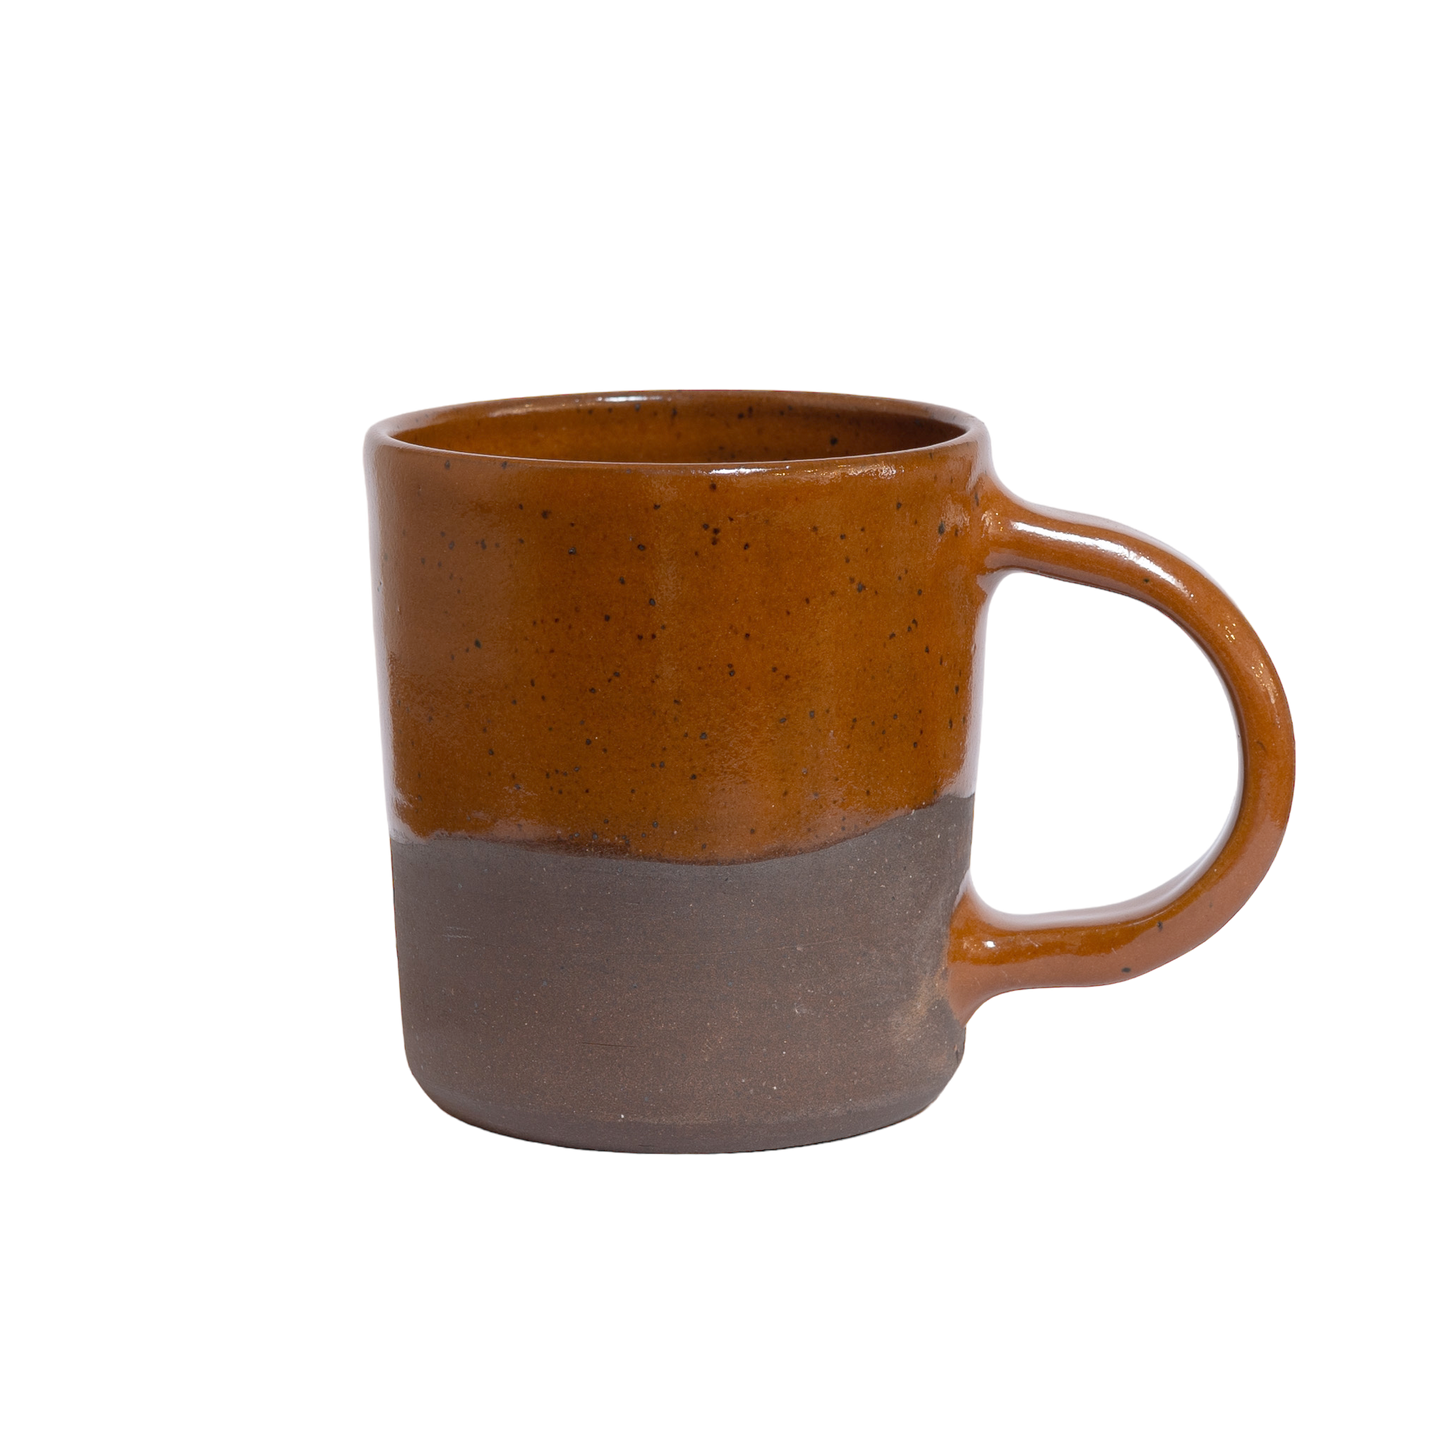 Pumpkin Ceramic Mug